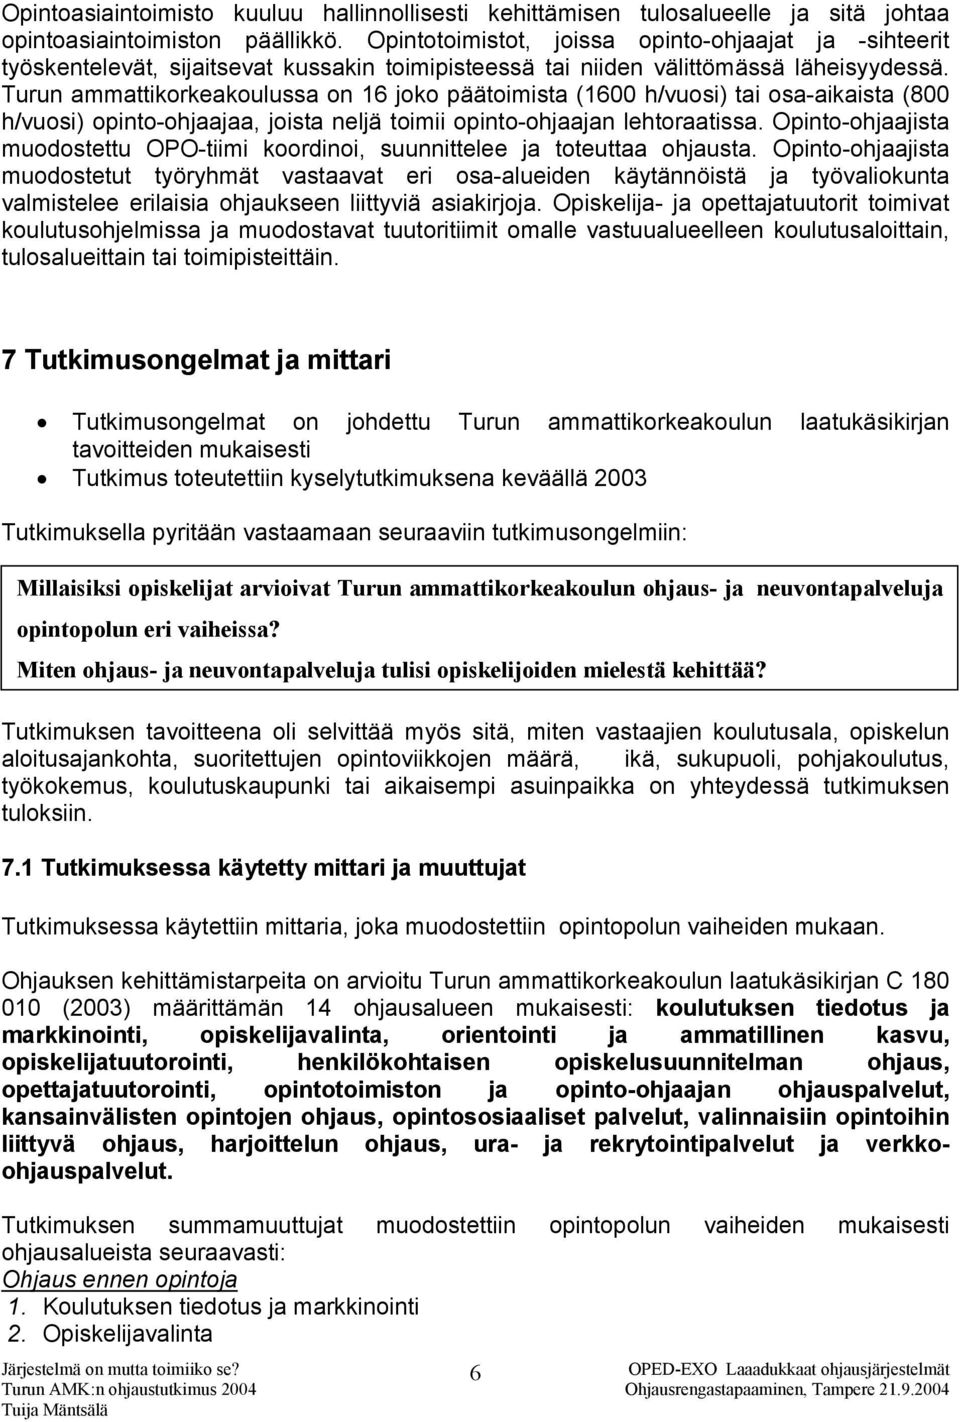 Turun ammattikorkeakoulussa on 16 joko päätoimista (1600 h/vuosi) tai osa-aikaista (800 h/vuosi) opinto-ohjaajaa, joista neljä toimii opinto-ohjaajan lehtoraatissa.